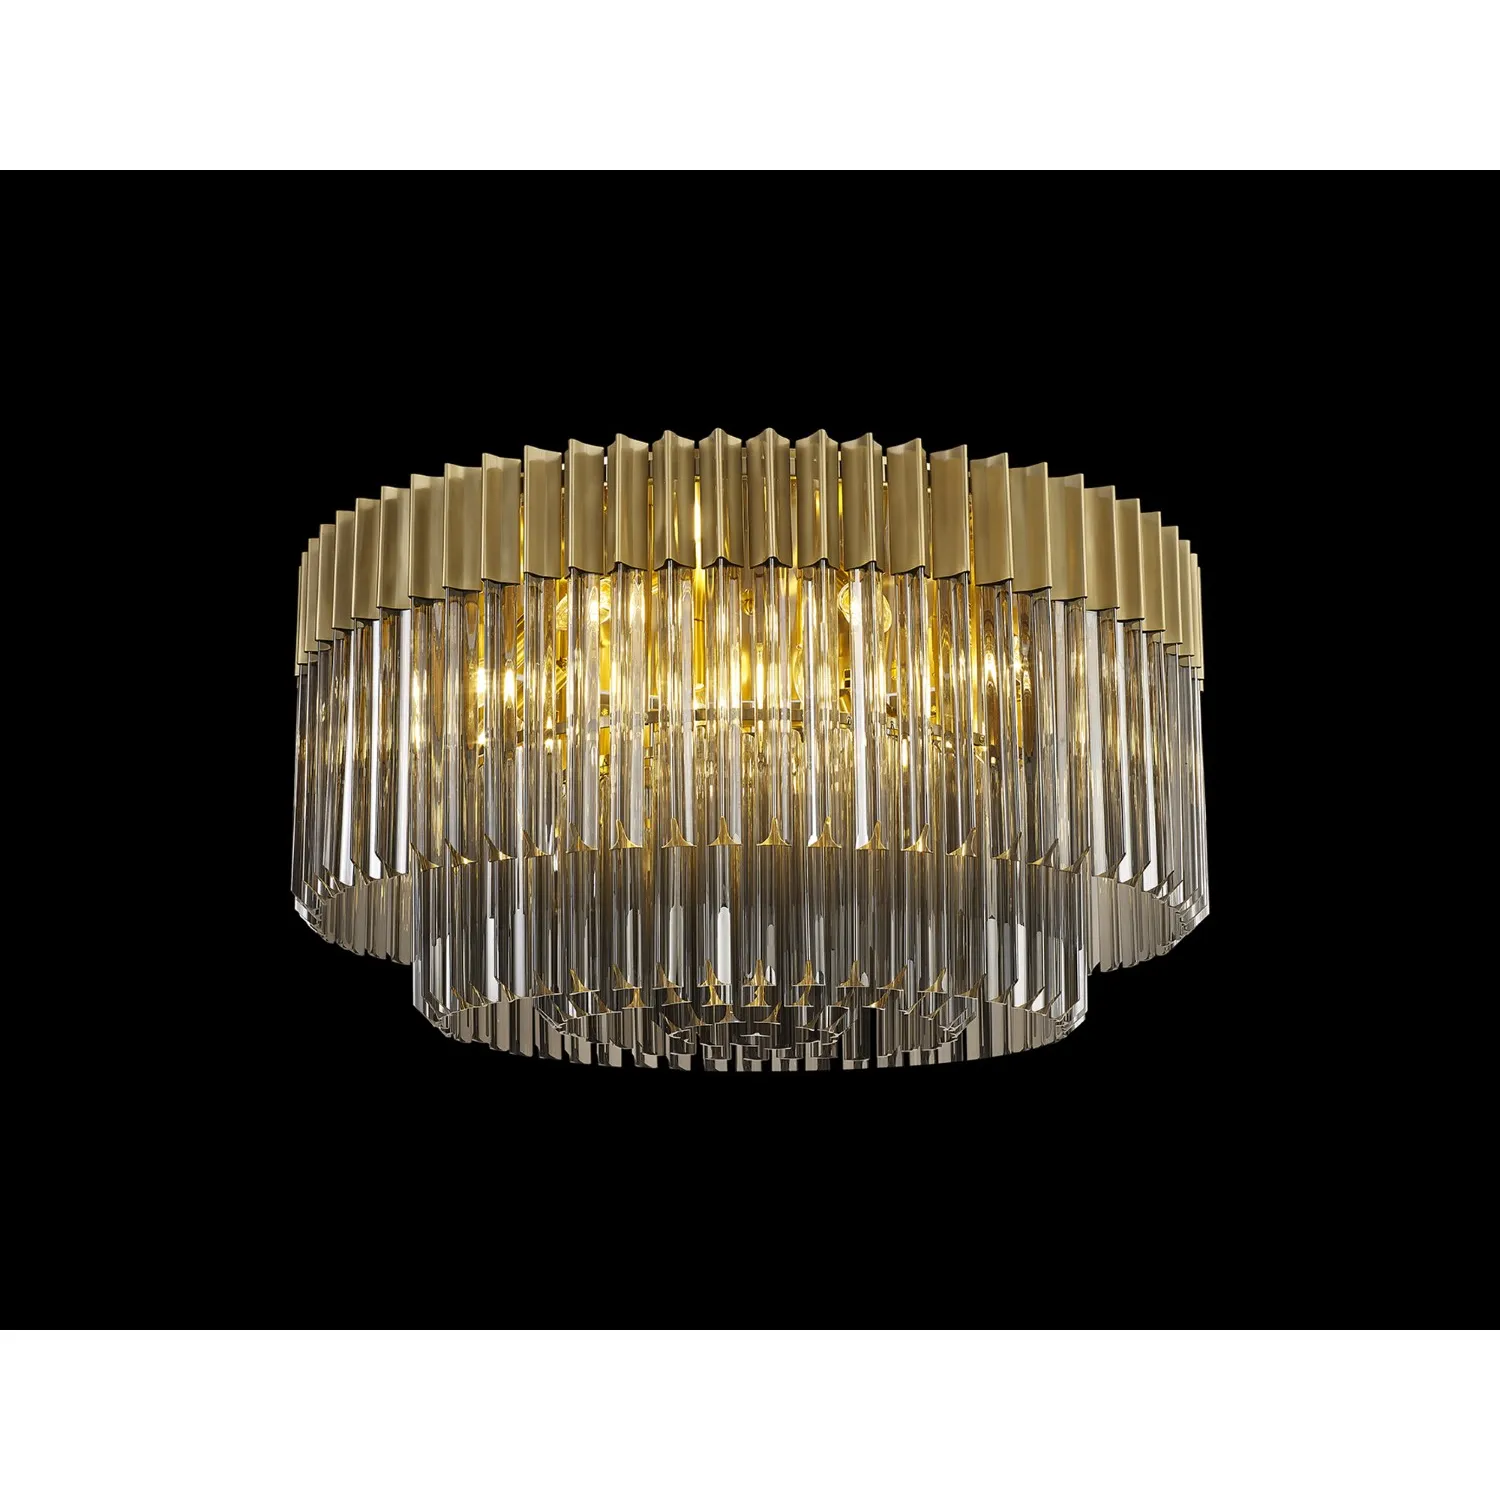 Aldershot 80cm Ceiling Round 12 Light E14, Brass Smoke Sculpted Glass, Item Weight: 28.4kg